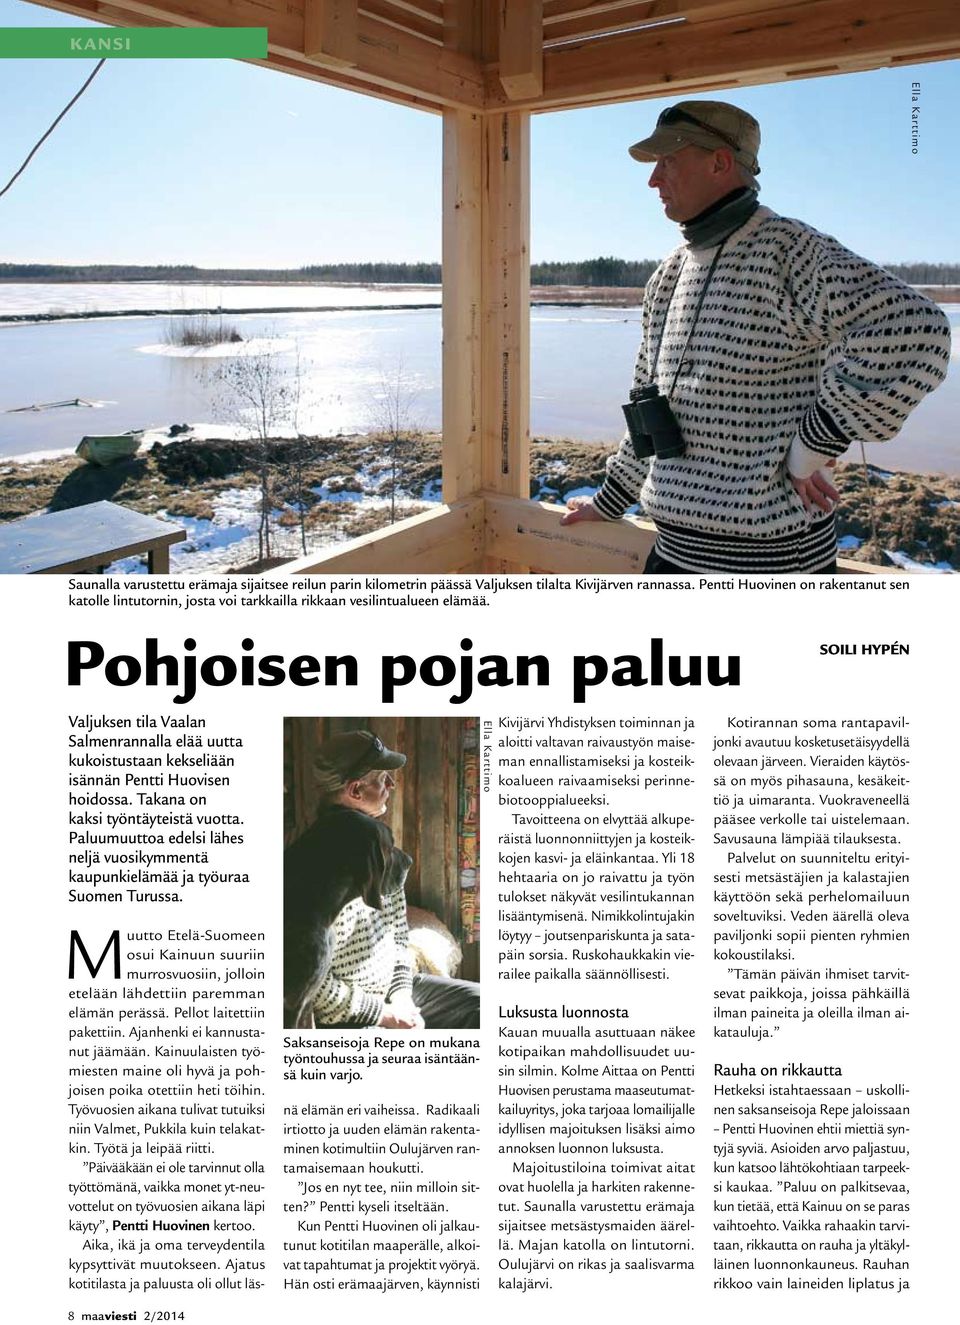 Pohjoisen pojan paluu SOILI HYPéN Valjuksen tila Vaalan Salmenrannalla elää uutta kukoistustaan kekseliään isännän Pentti Huovisen hoidossa. Takana on kaksi työntäyteistä vuotta.